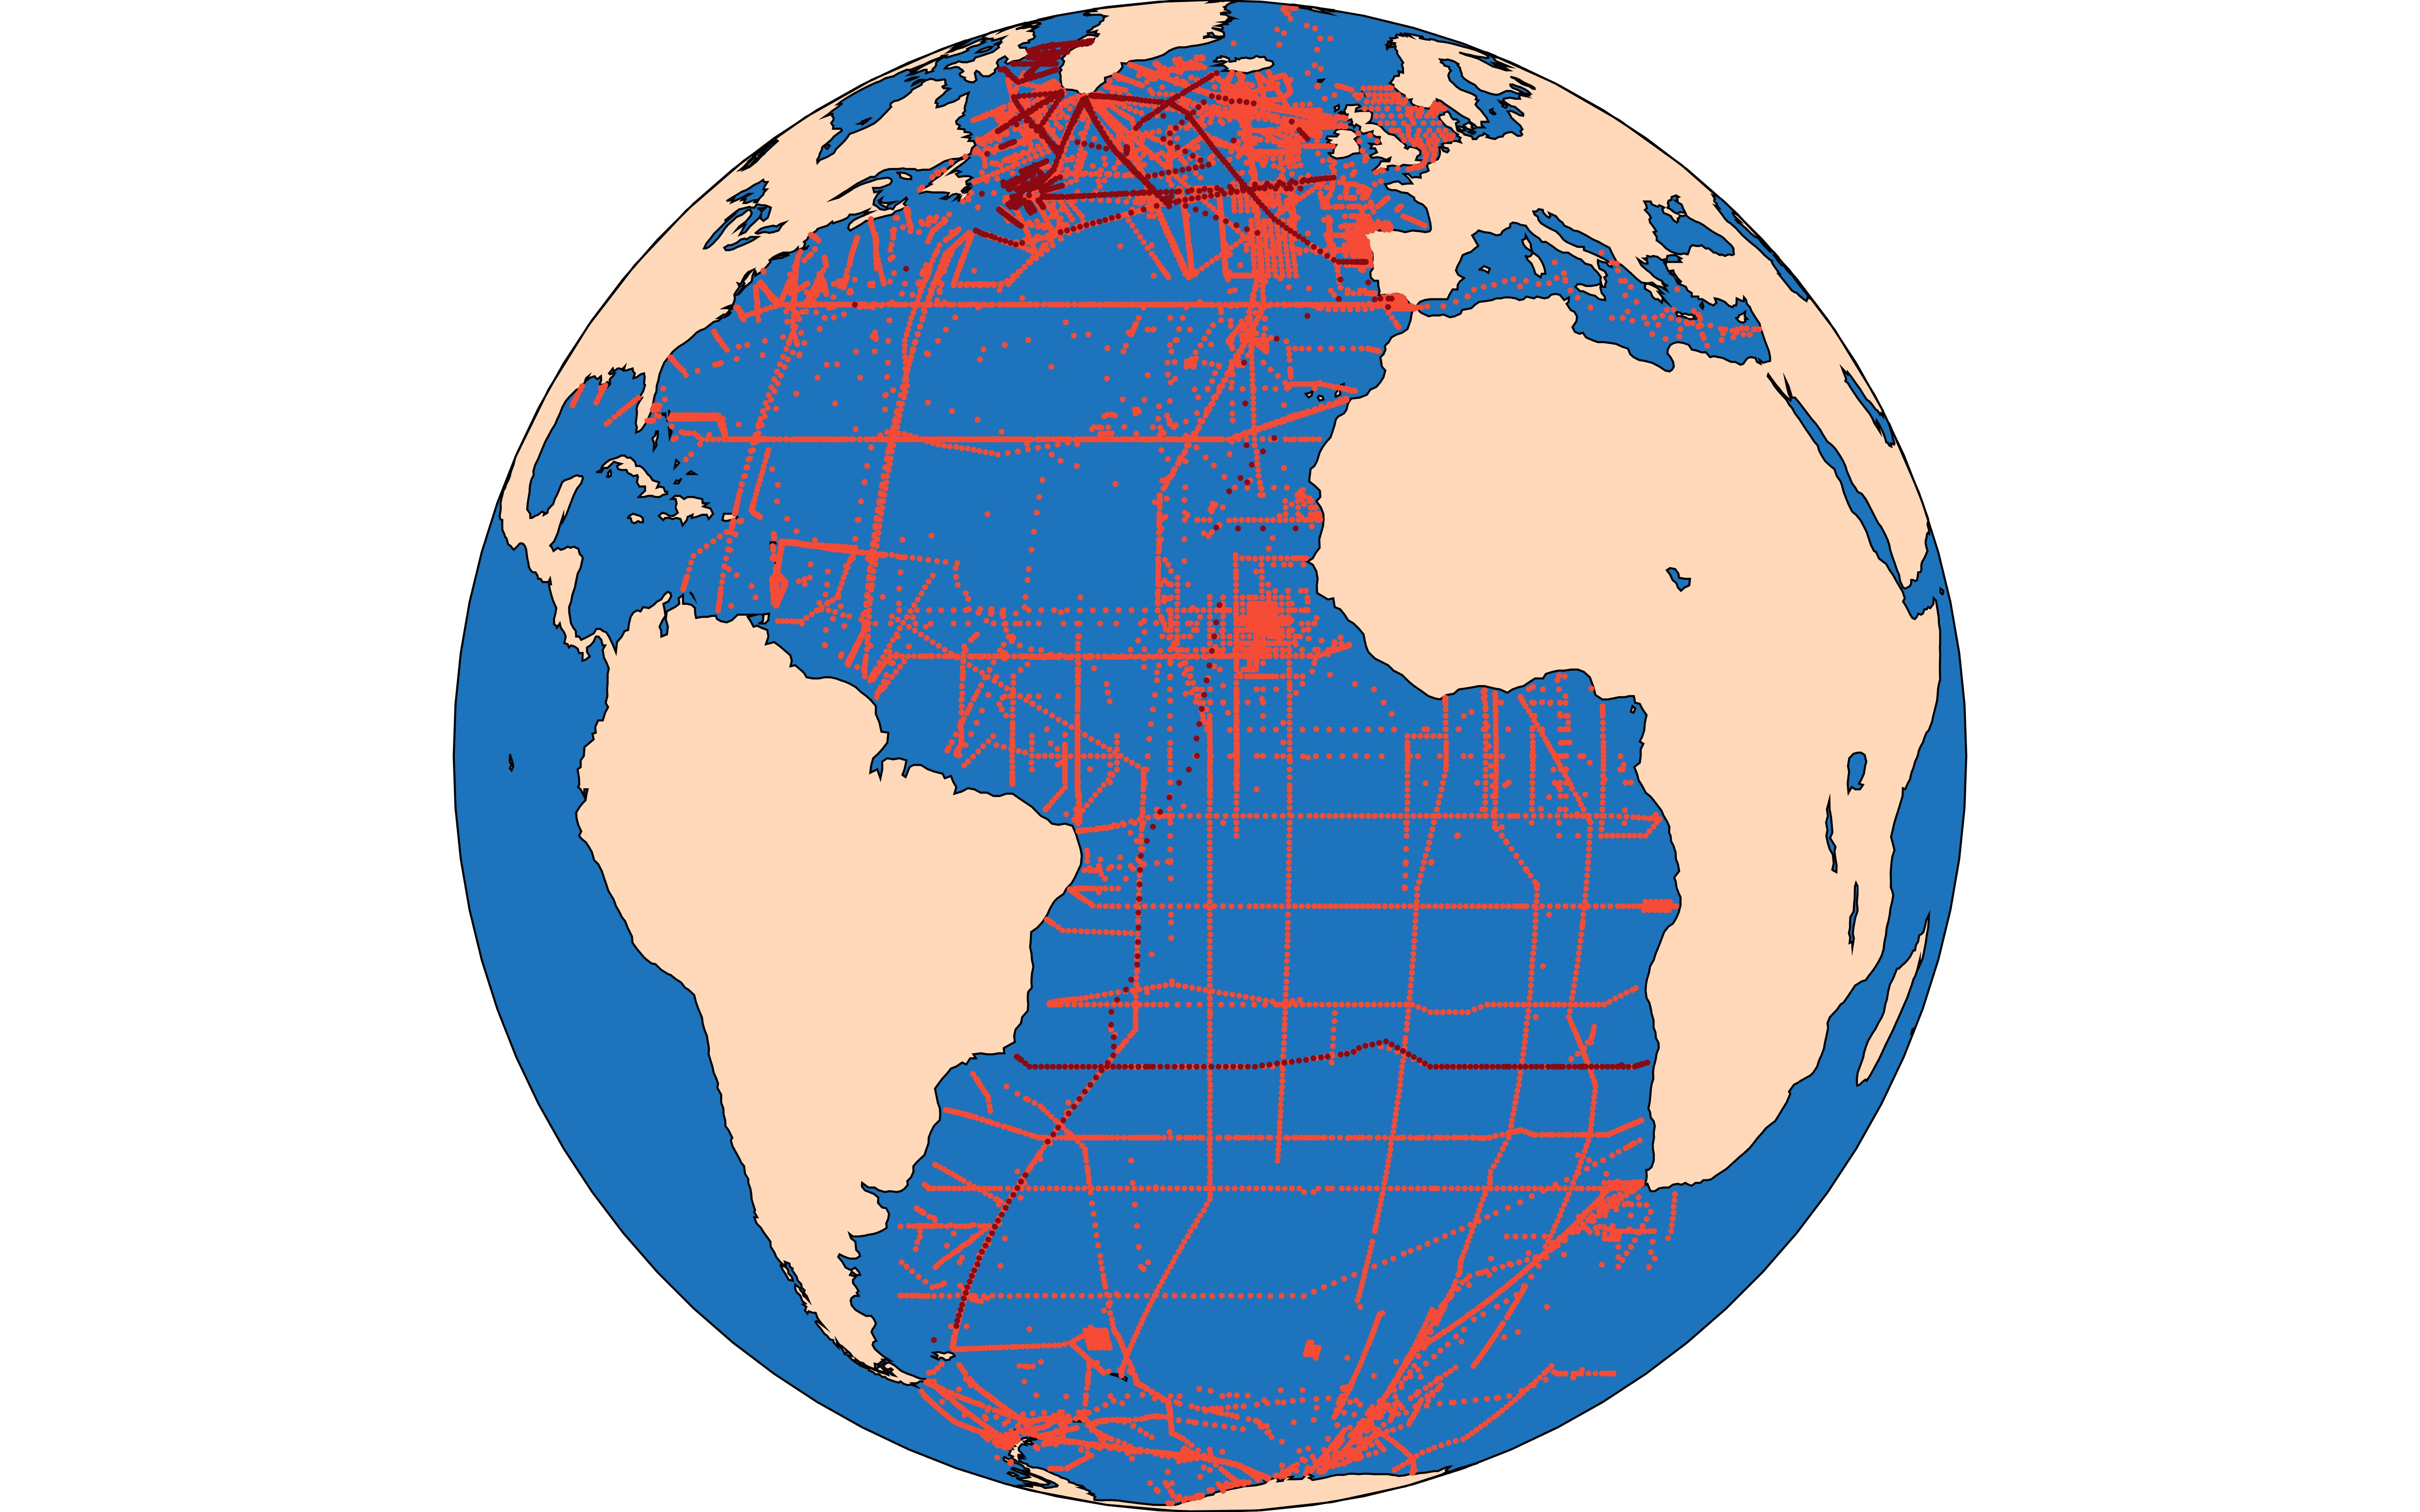 GLODAPv2.2020 Atlantic Map